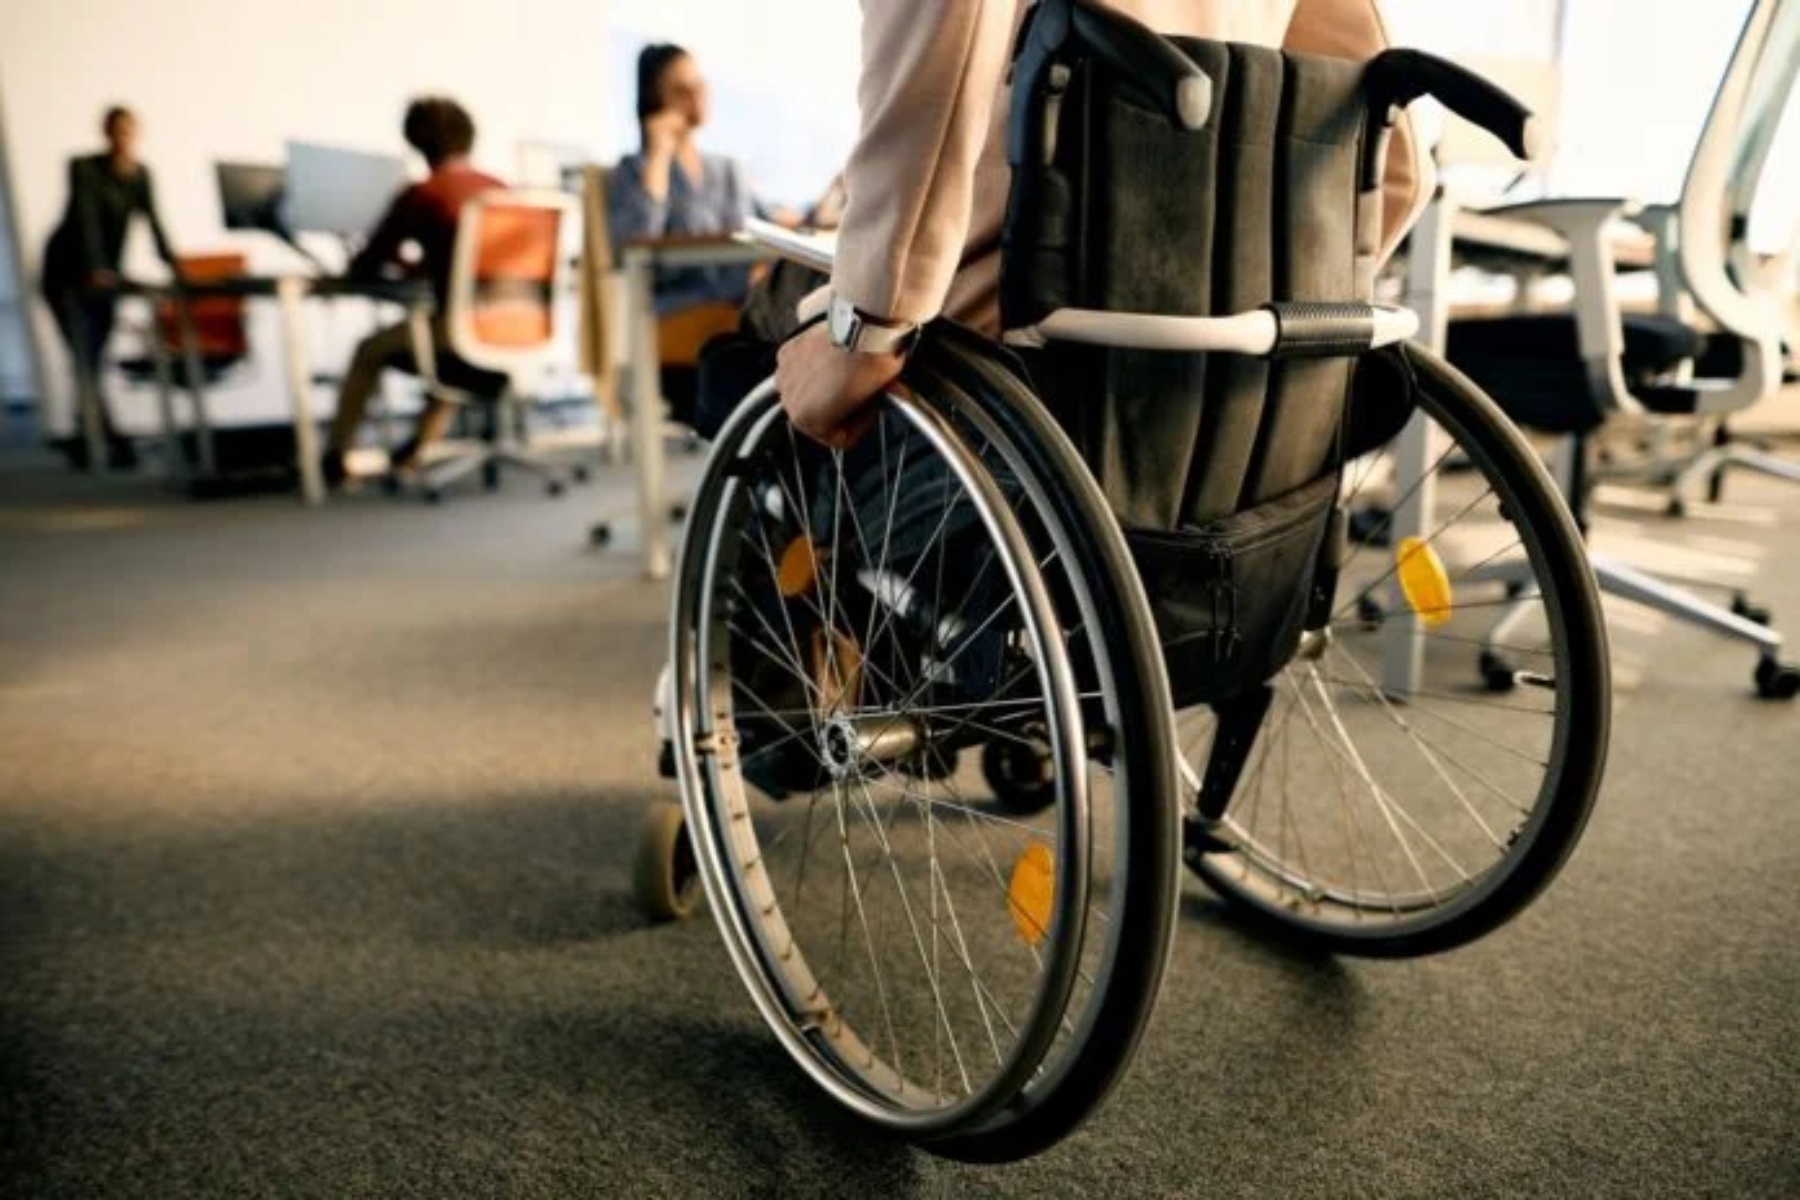 ΑΓΗΣΙΛΑΟΣ: Επιδοτούμενο πρόγραμμα επαγγελματικής κατάρτισης για άτομα με αναπηρία και χρόνιες παθήσεις 30 – 64 ετών